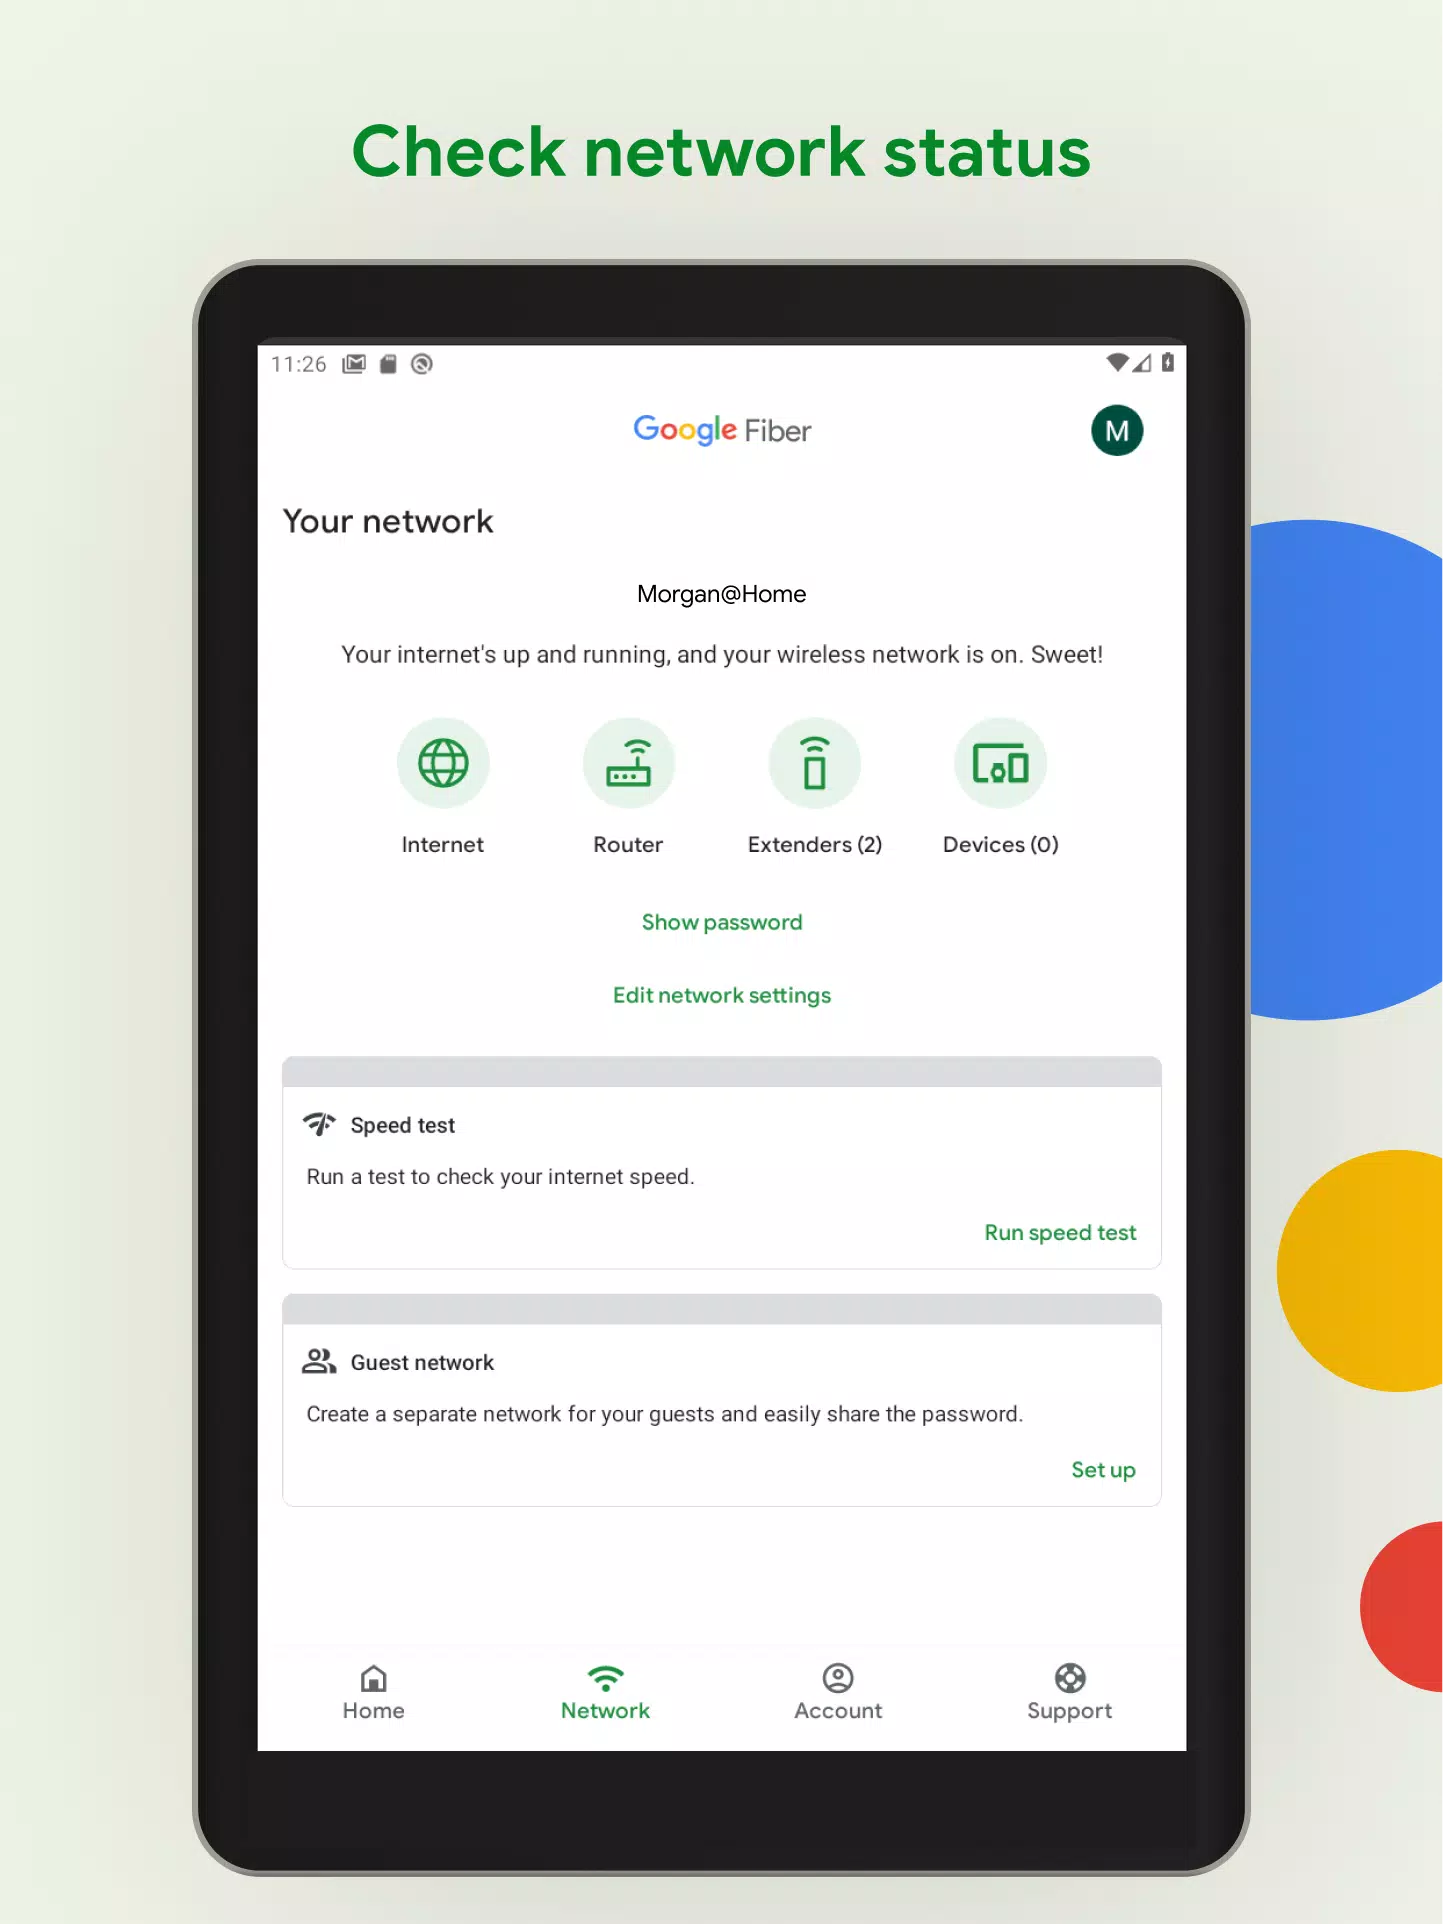 Portal Seeg Fibras APK pour Android Télécharger